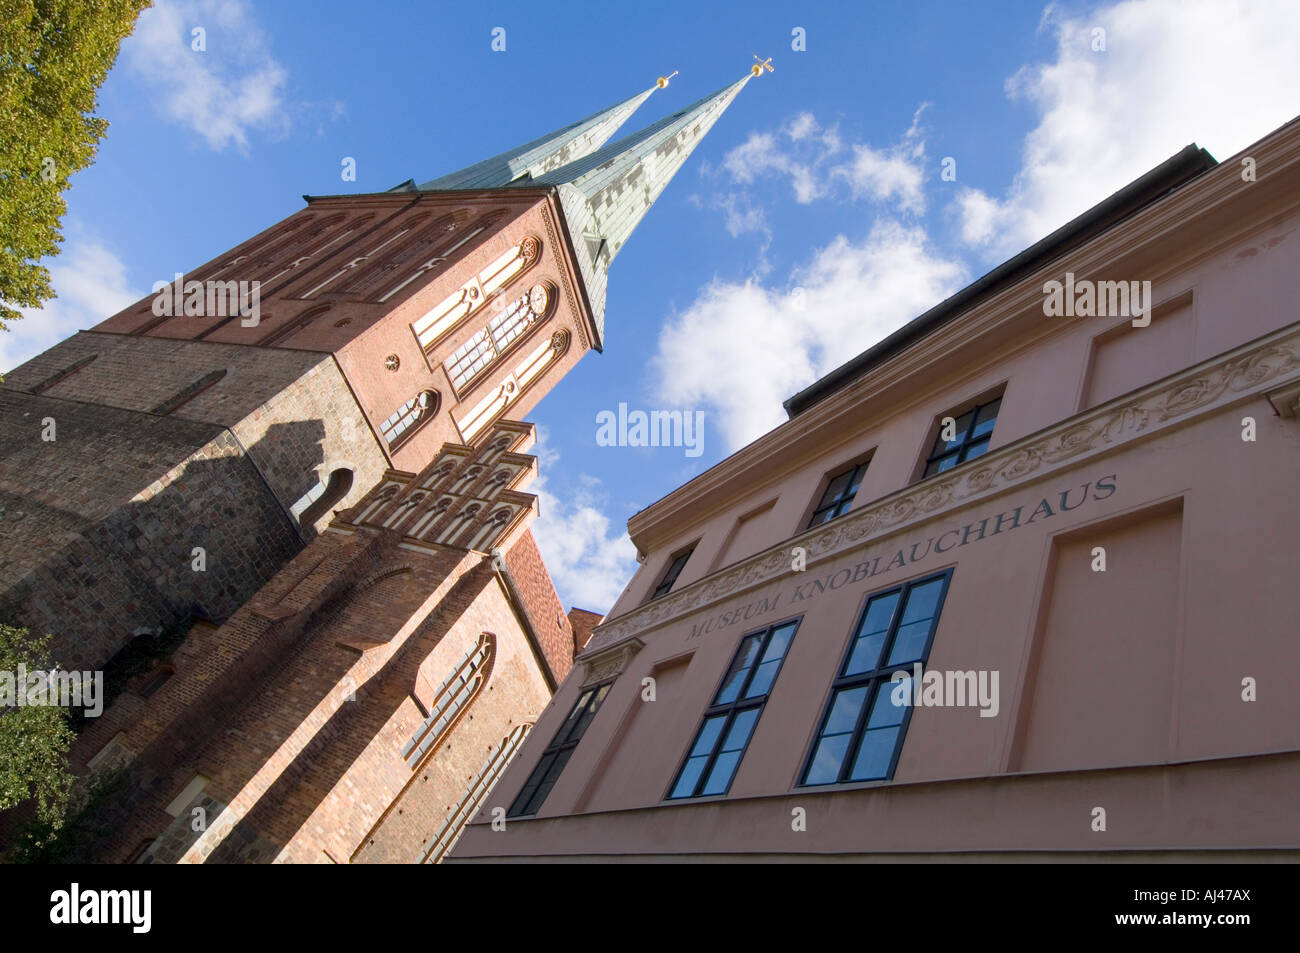 The Nikolaikirche or church of Saint Nicholas in the area Nikolaiviertel next to the Knoblauch haus museum. Stock Photo